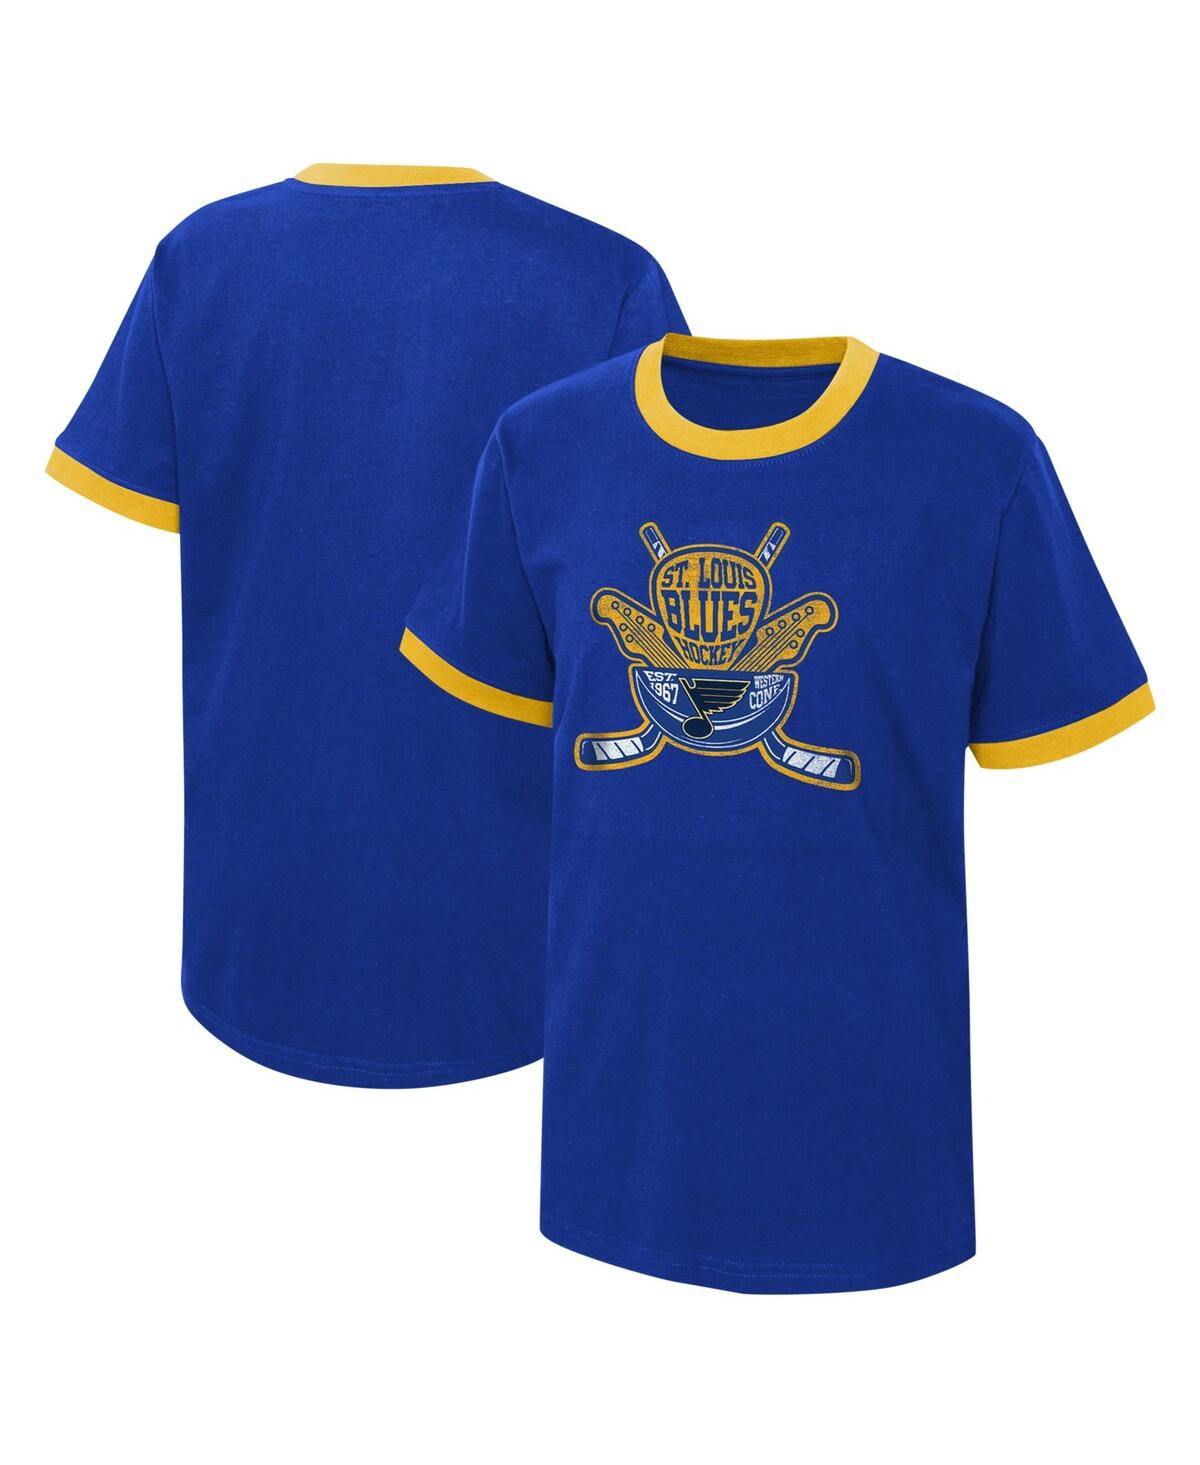 Shop Outerstuff Big Boys Blue Distressed St. Louis Blues Ice City T-shirt